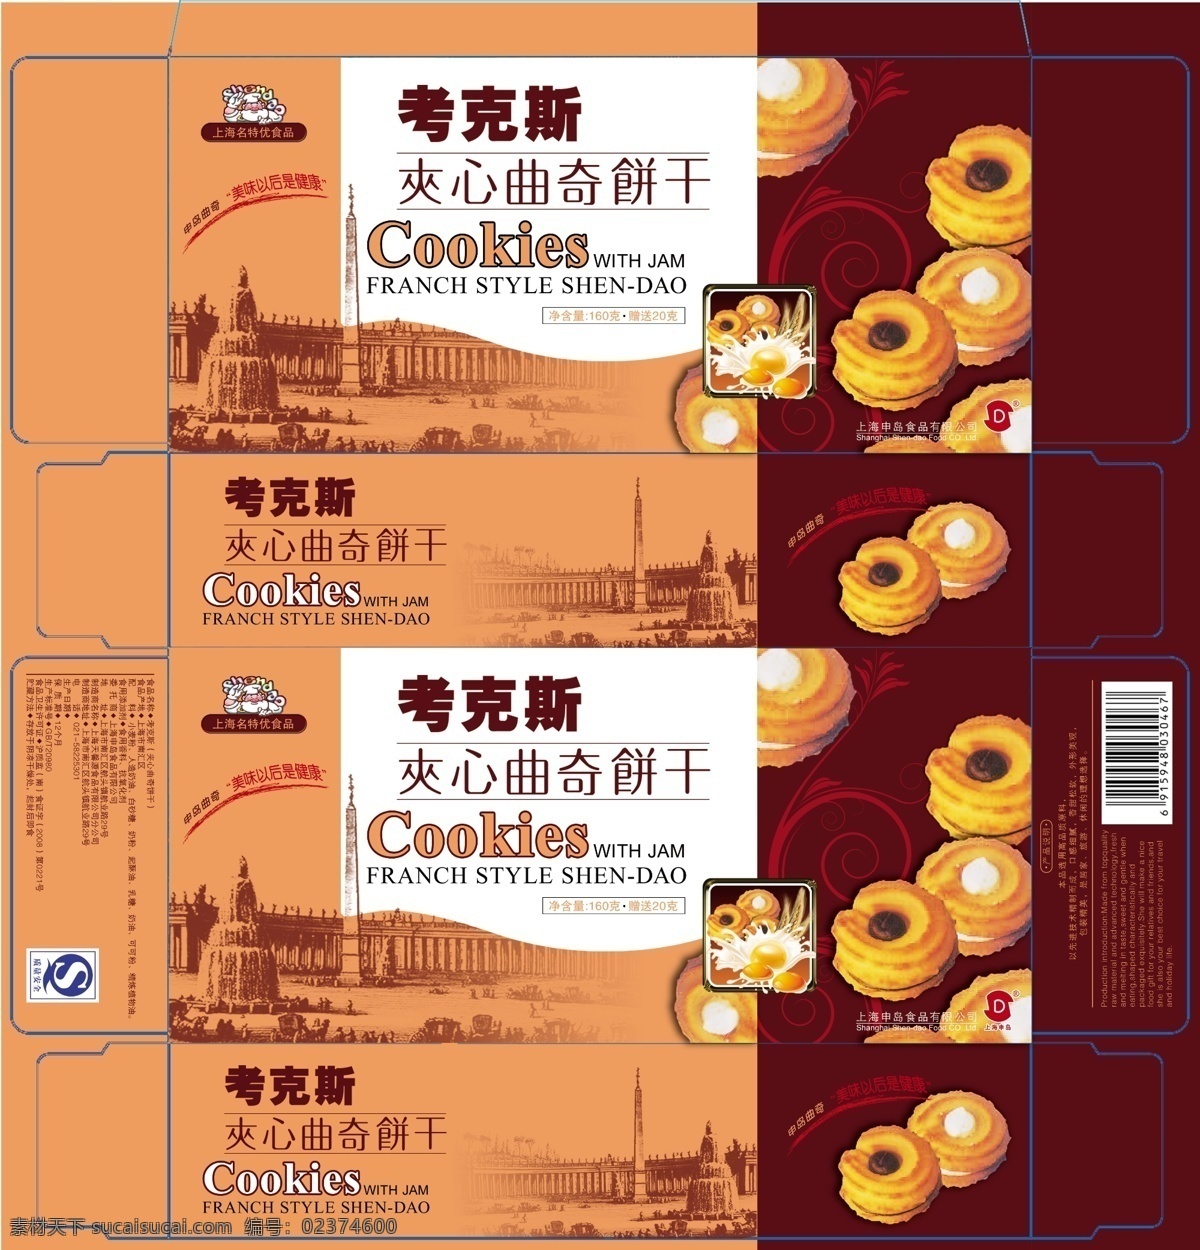 包装 包装设计 饼干 饼干包装 广告设计模板 曲奇 食品 模板下载 食品包装 源文件 psd源文件